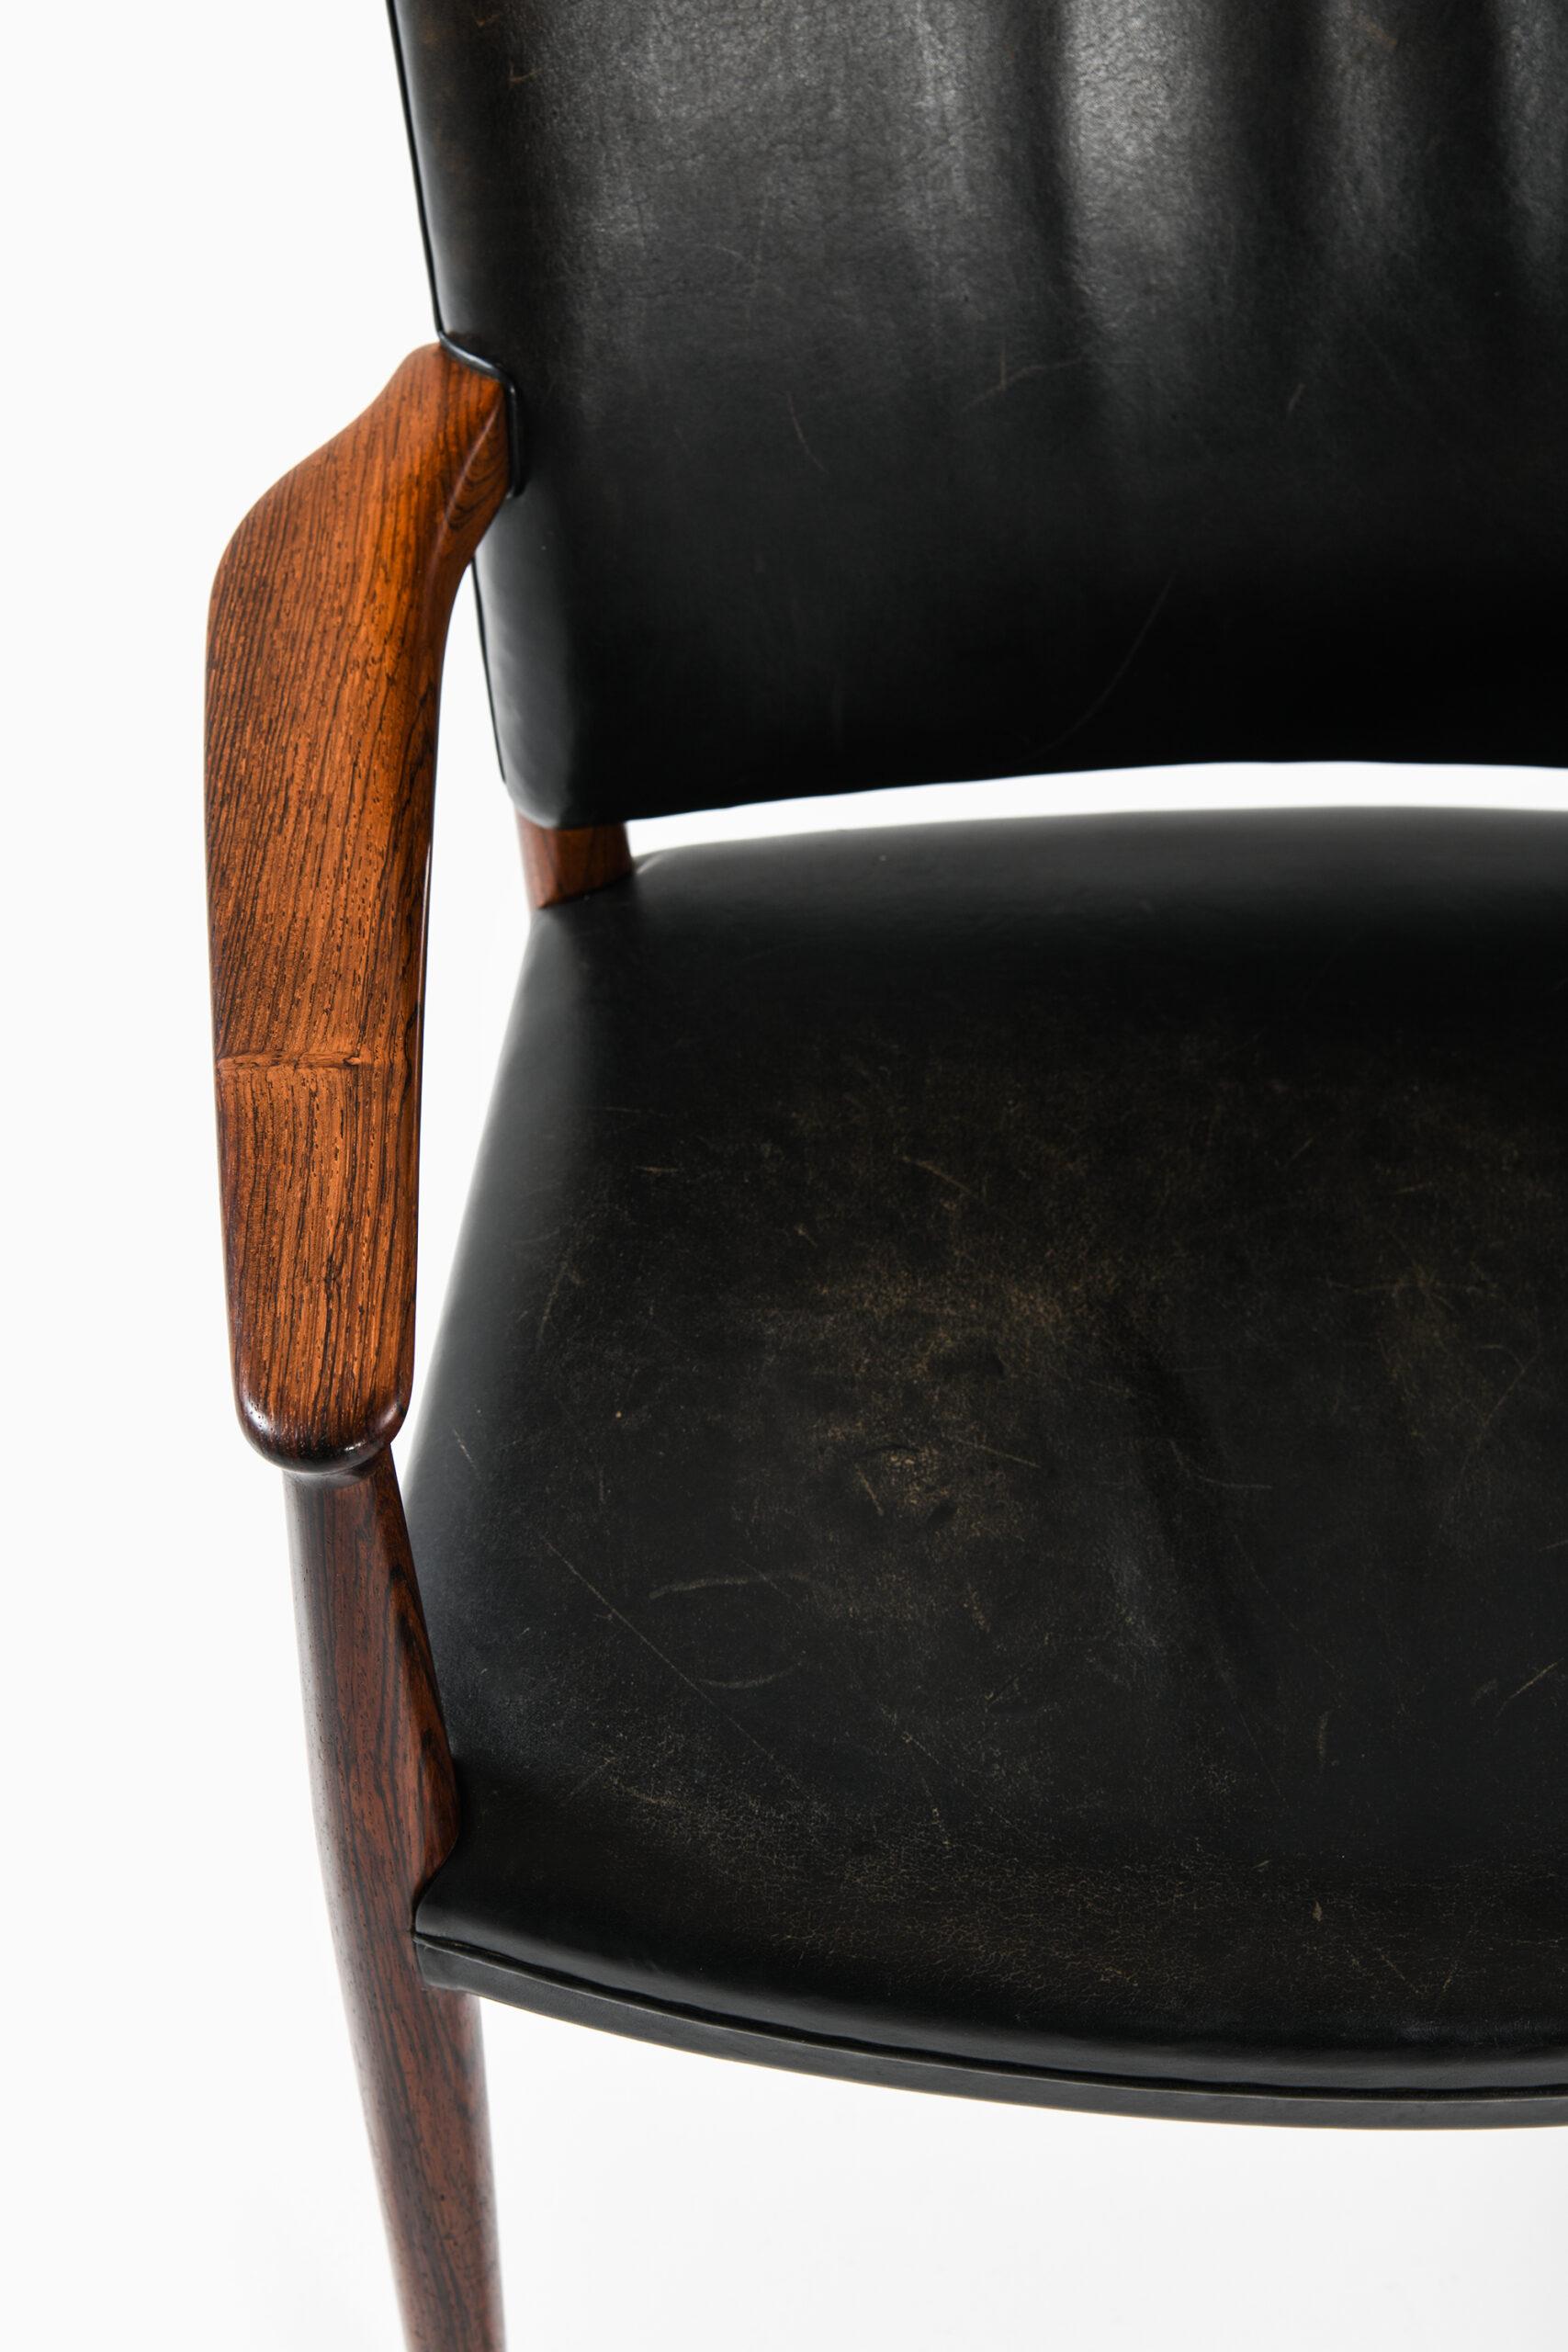 Rare armchair model M70/21 designed by Jacob Kjær. Produced by cabinetmaker Jacob Kjær in Denmark.